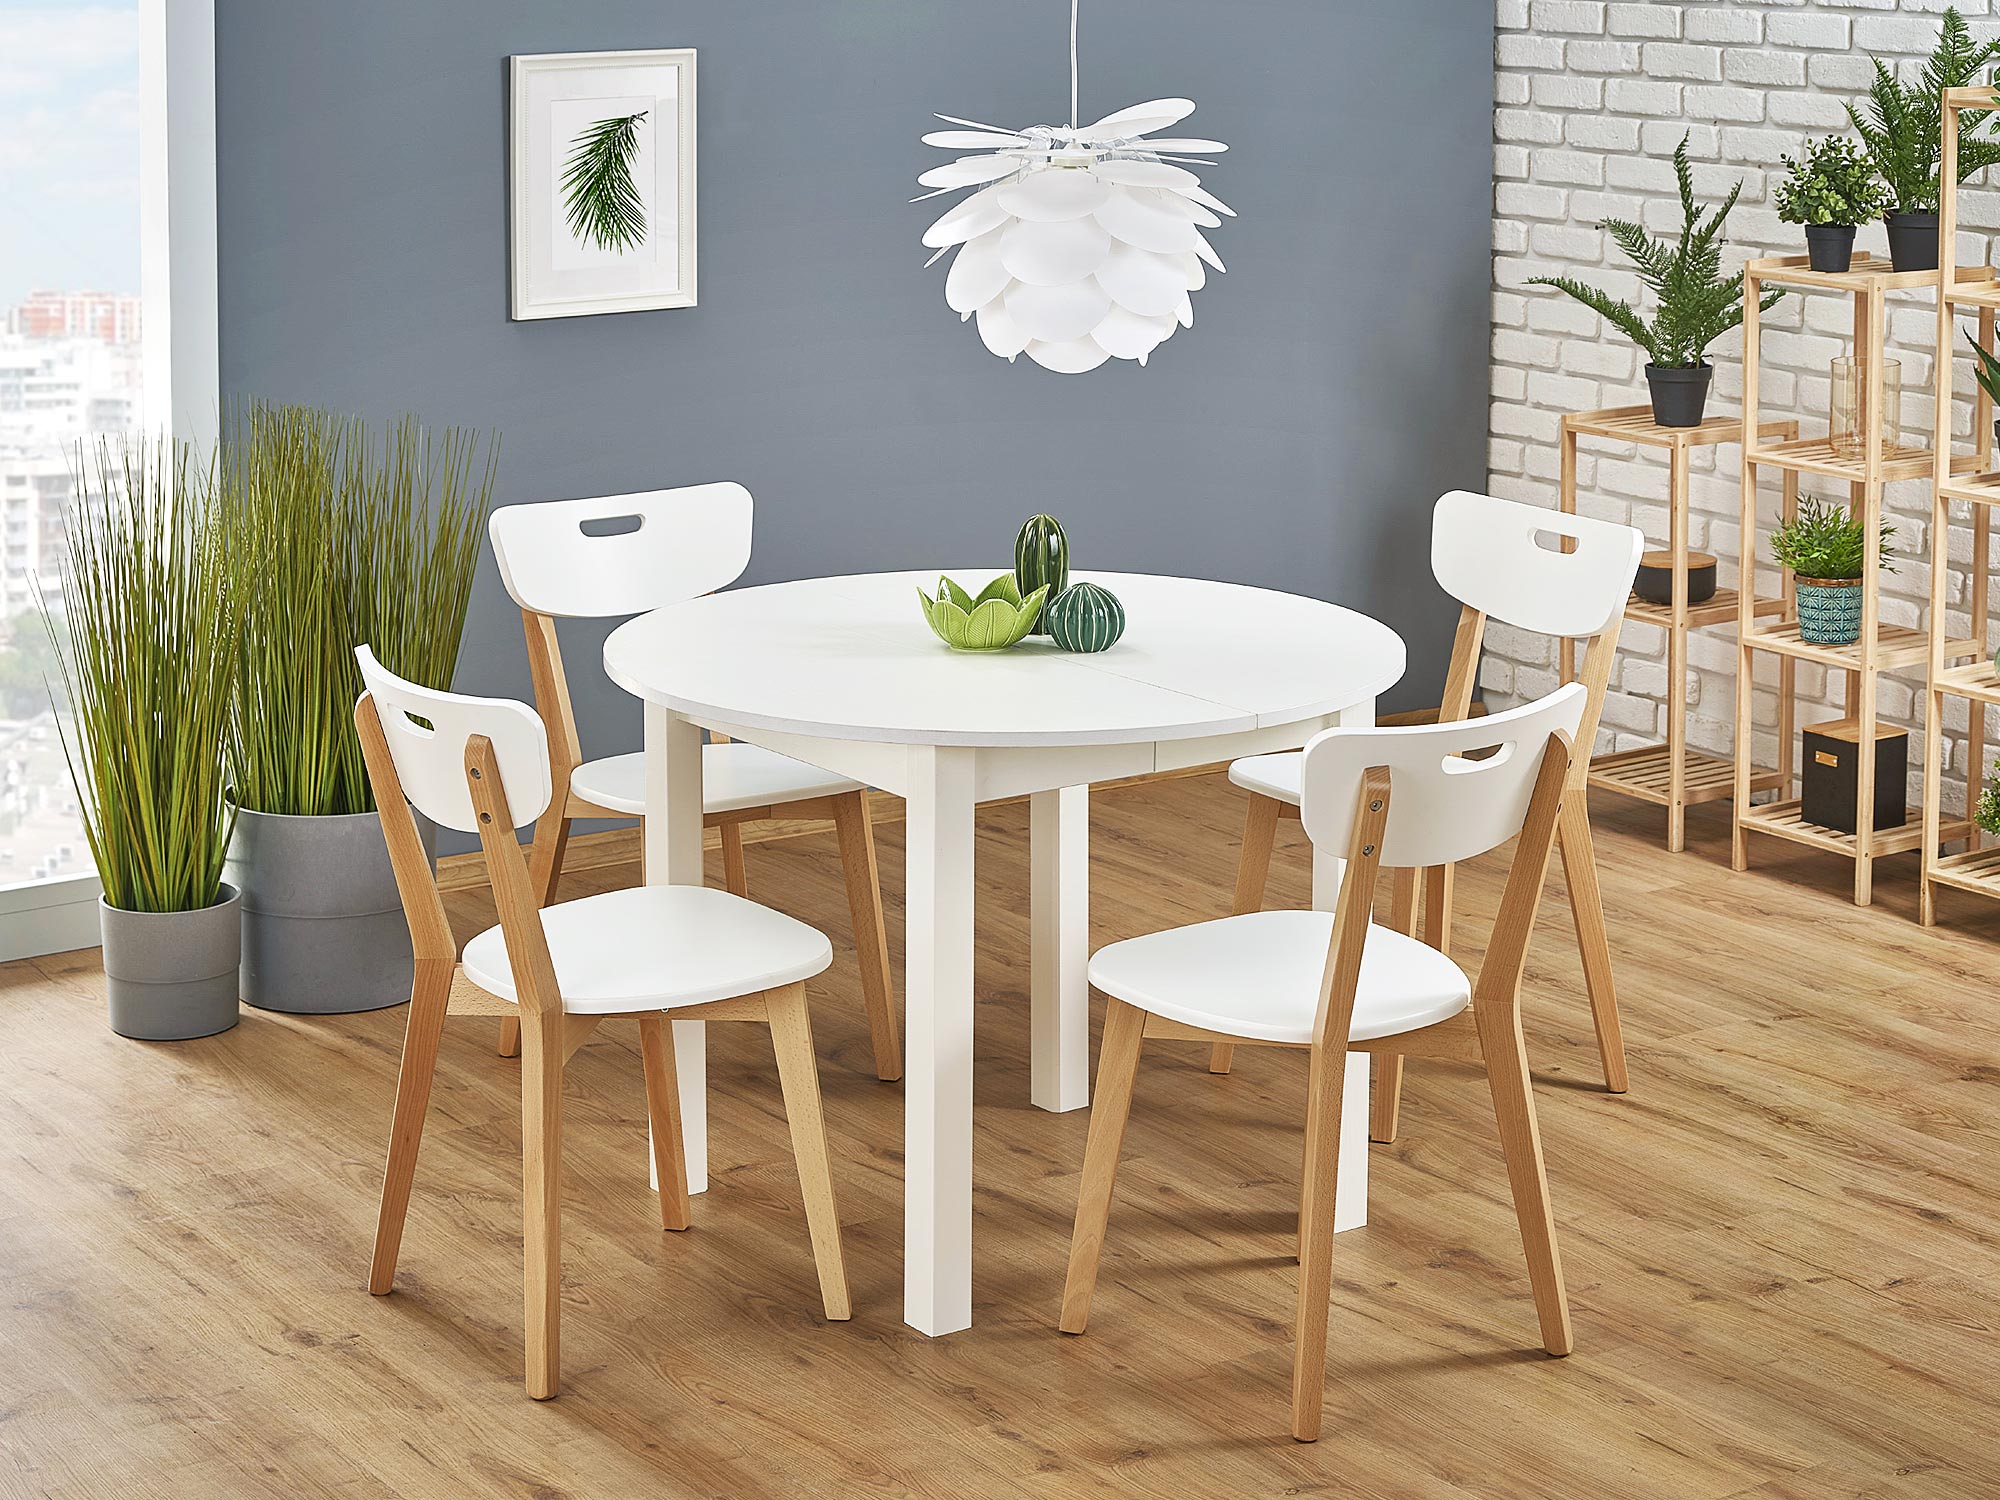 Krzesła kuchenne – jakie wybrać, by były wygodne i pasowały do wnętrza?